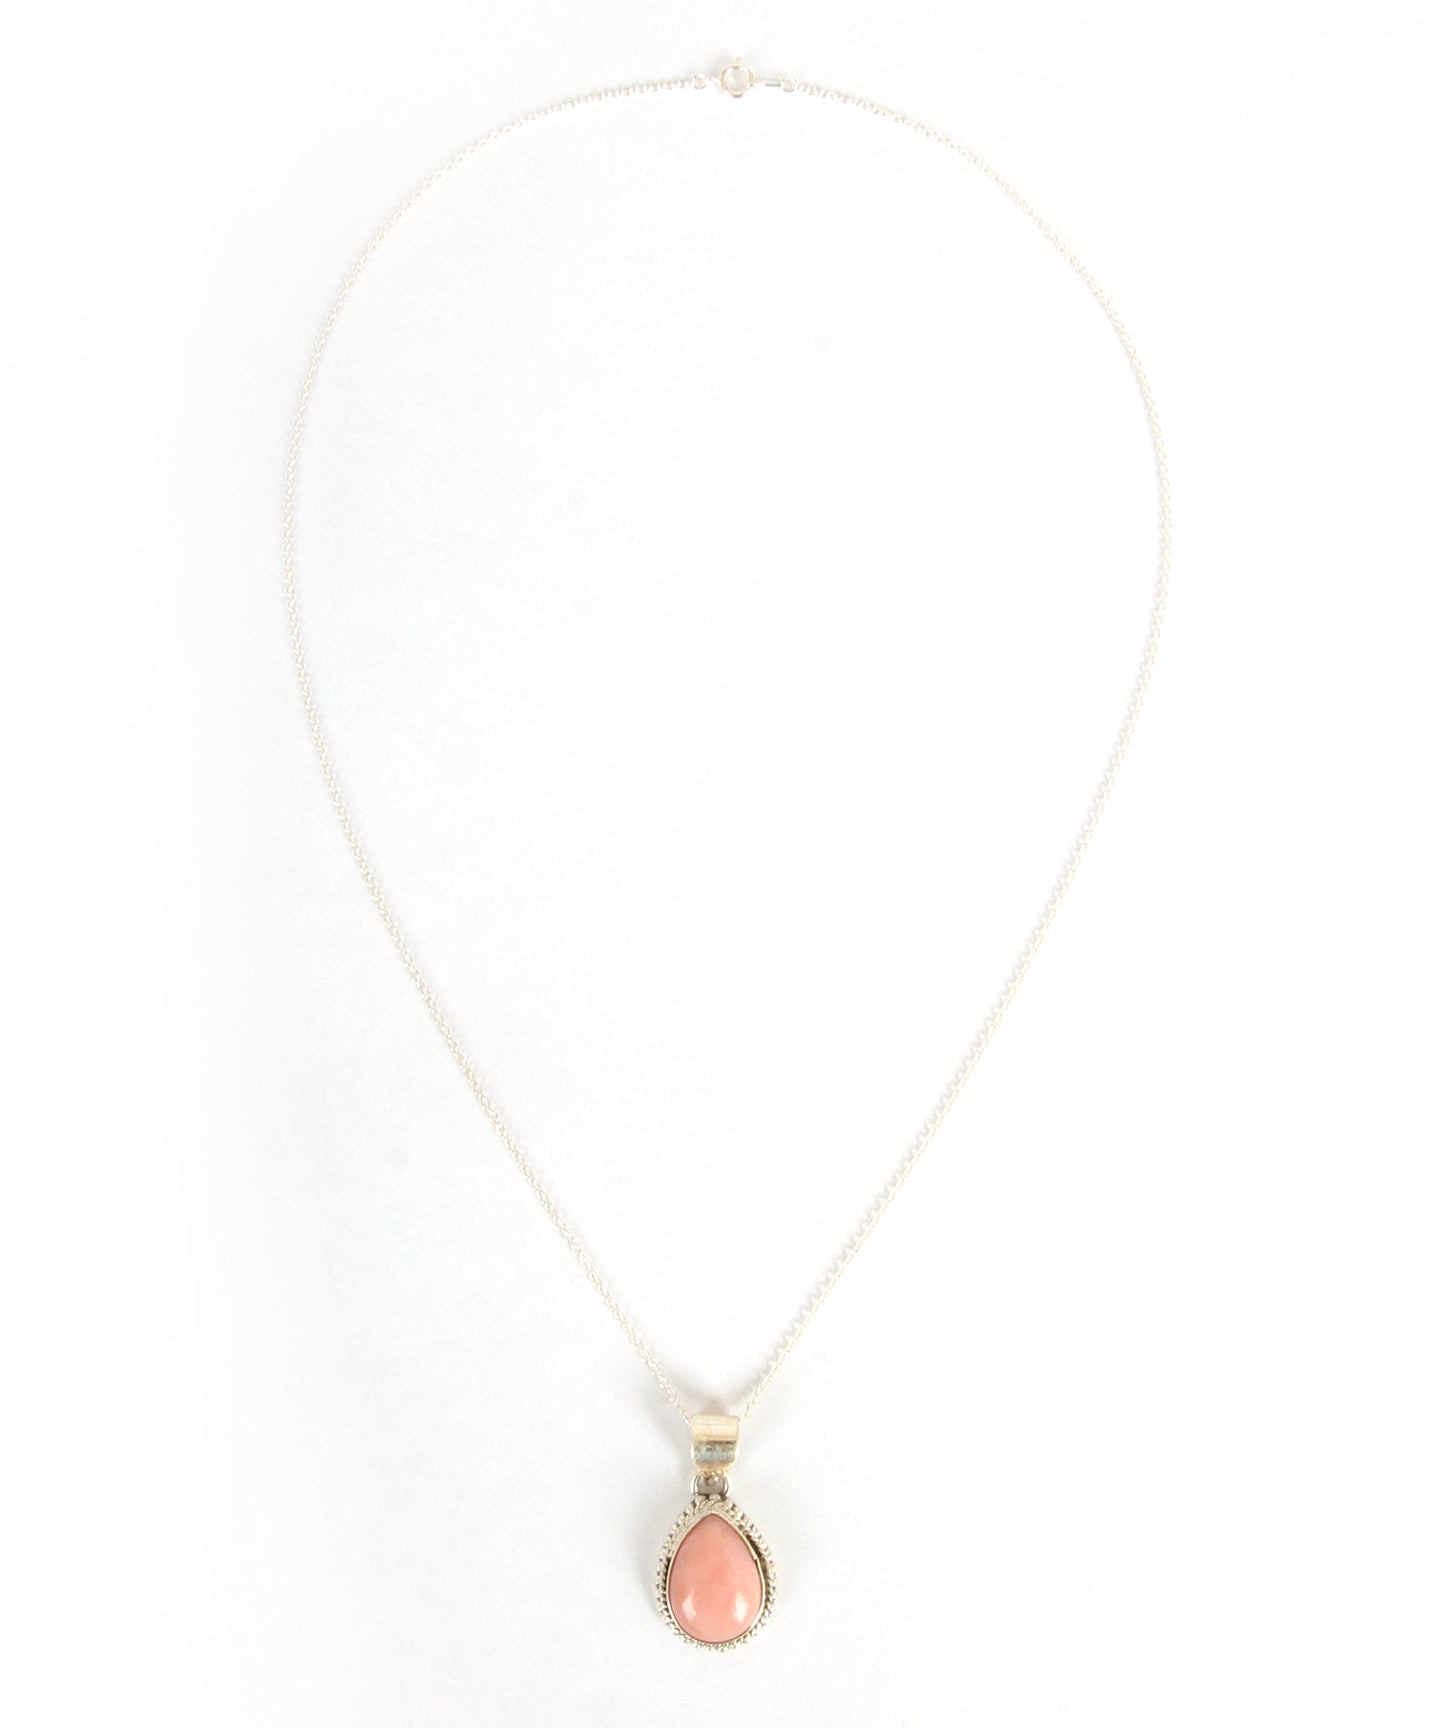 【フランス買付1点もの】ピンクオパールしずく型装飾ネックレス(スターリングシルバー)